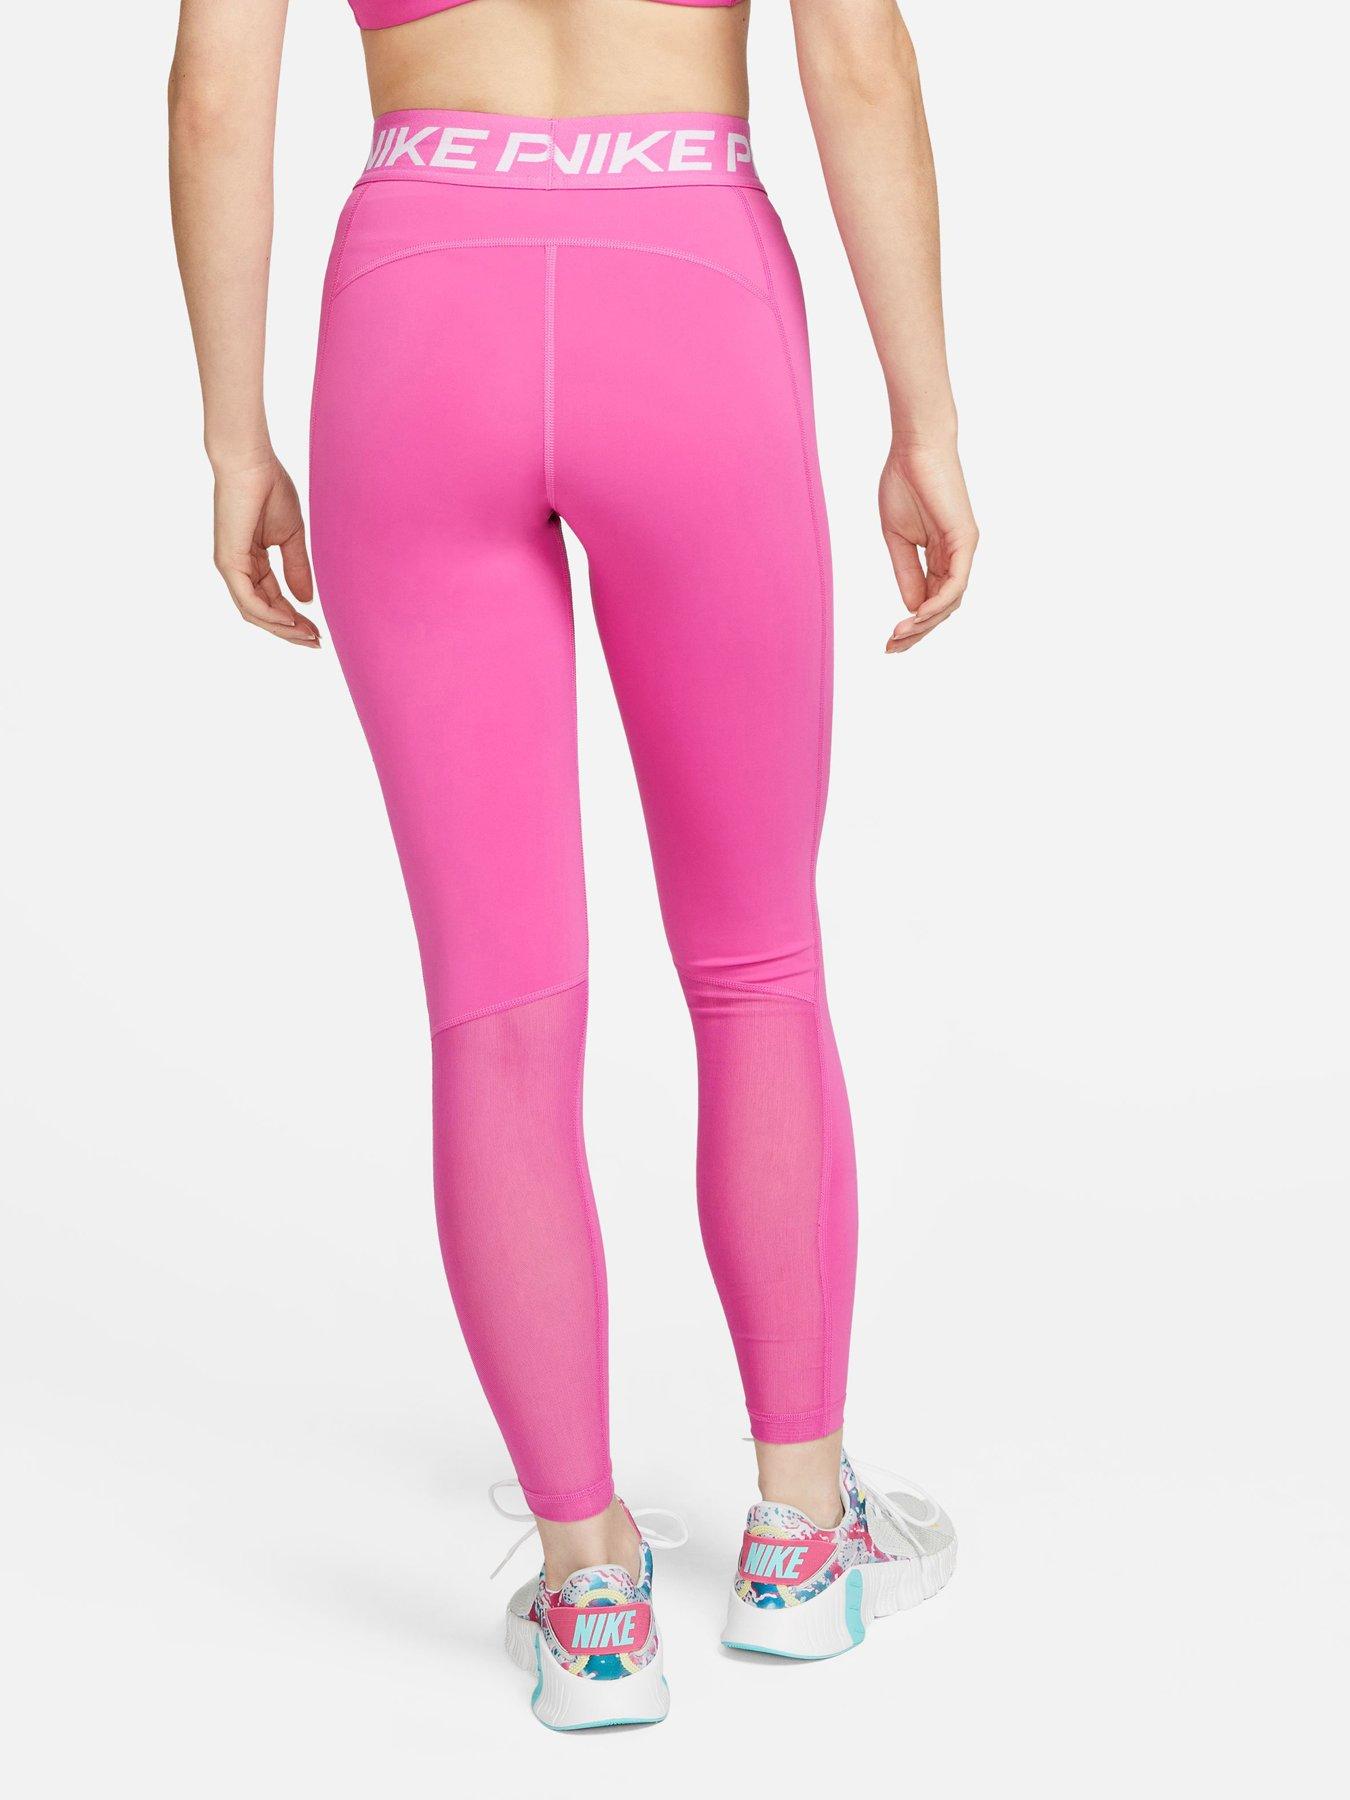 Nike Pro Training Plus 365 7/8 leggings in pink